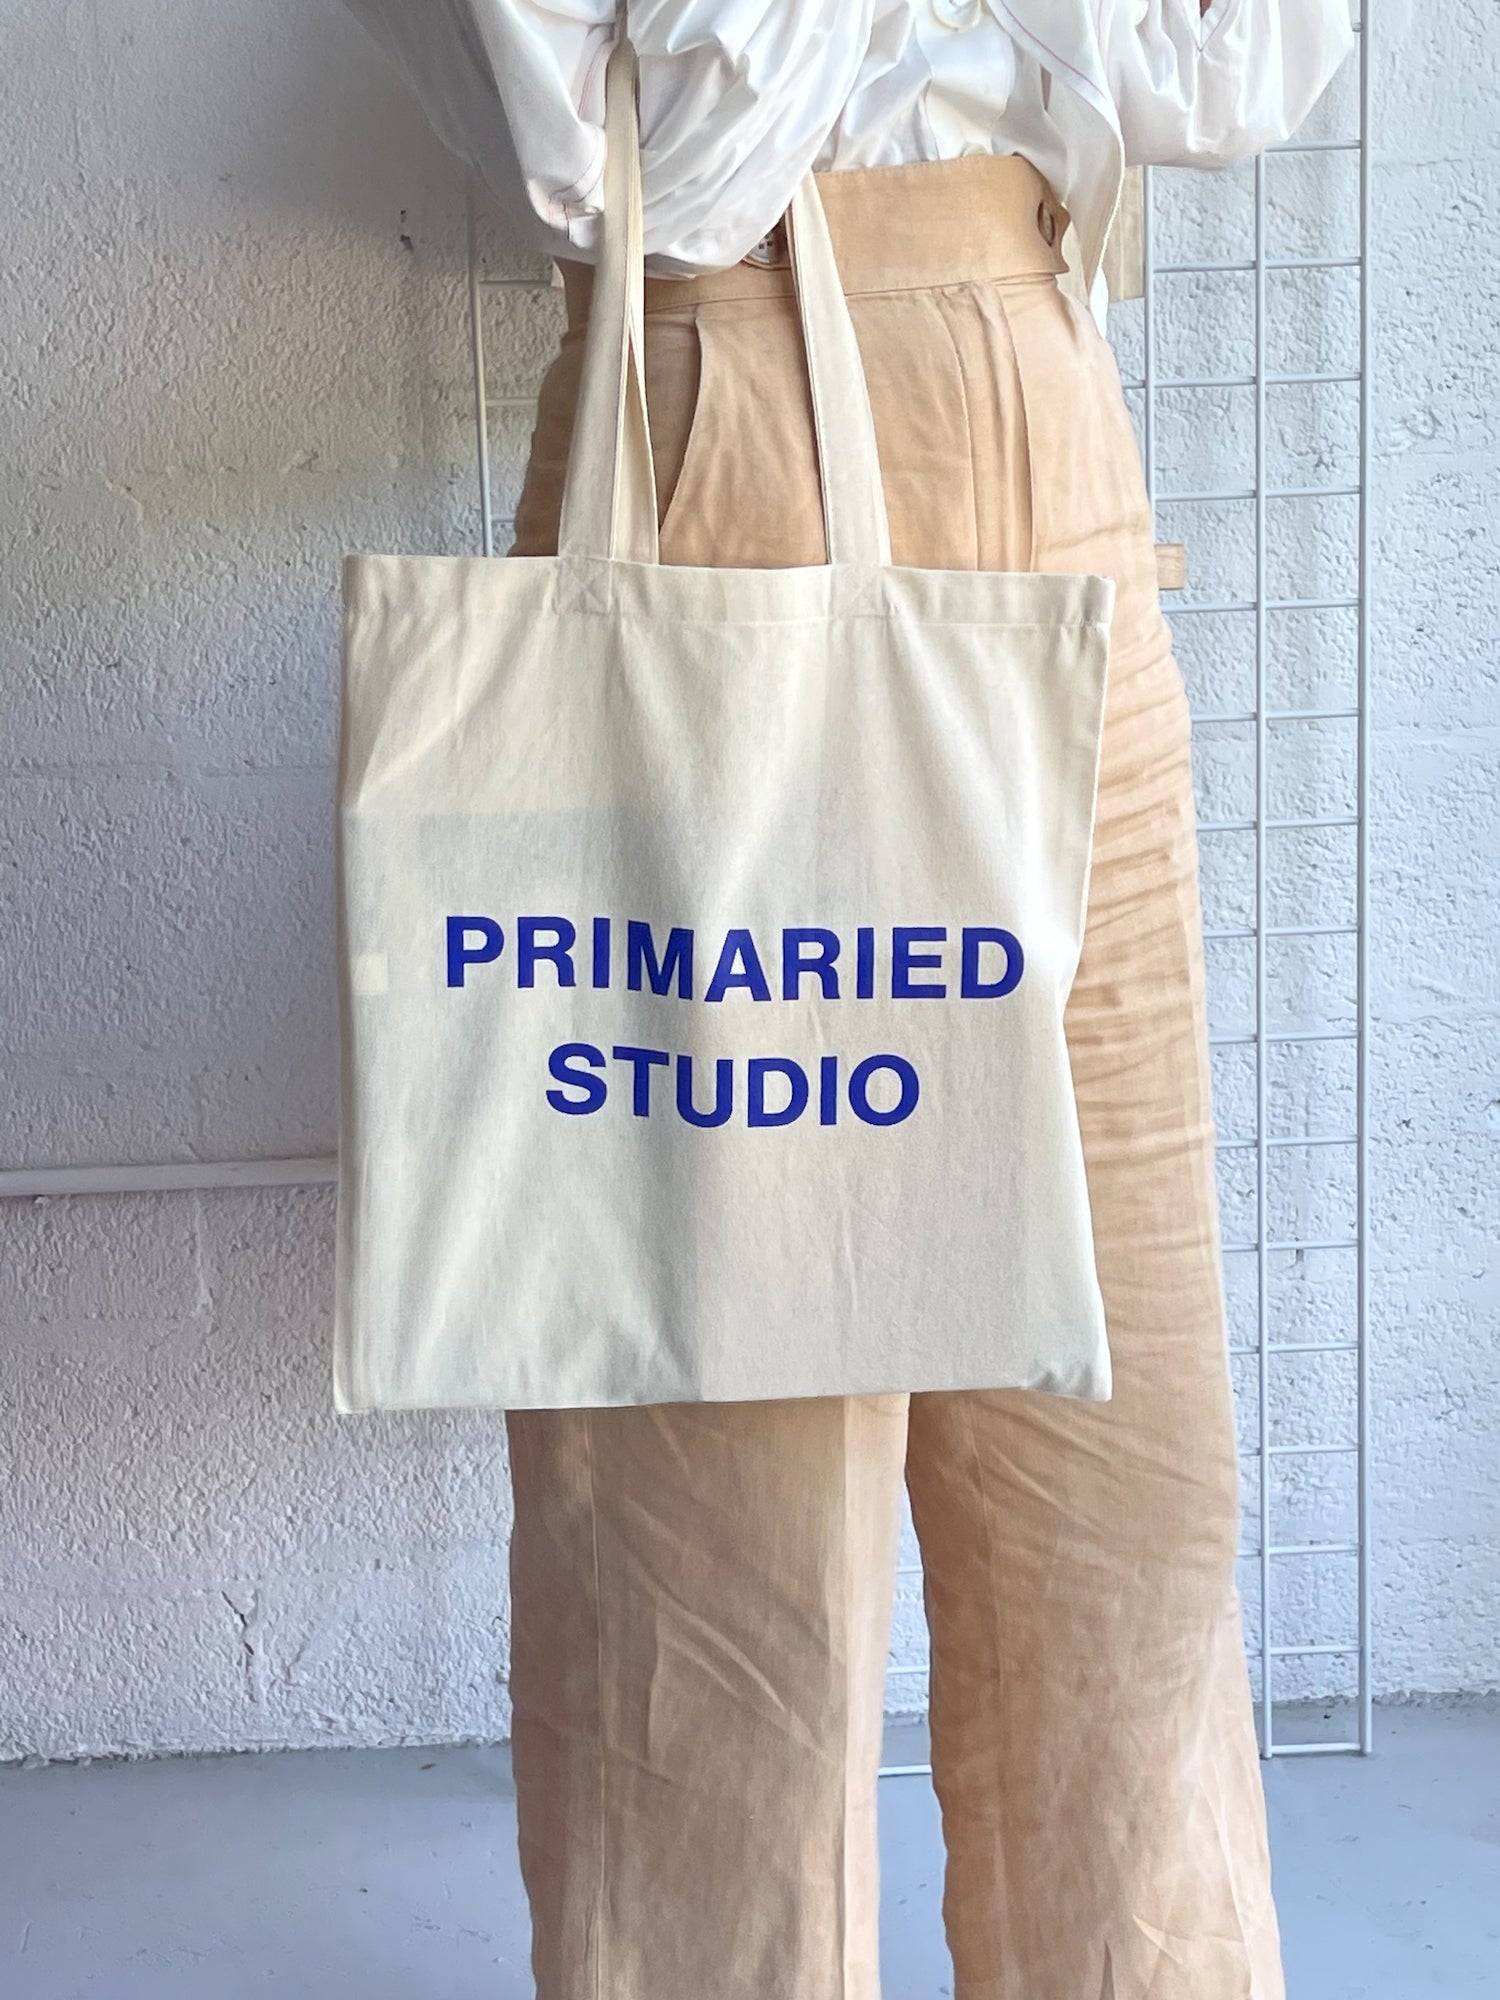 Primaried Studio Tote Bag